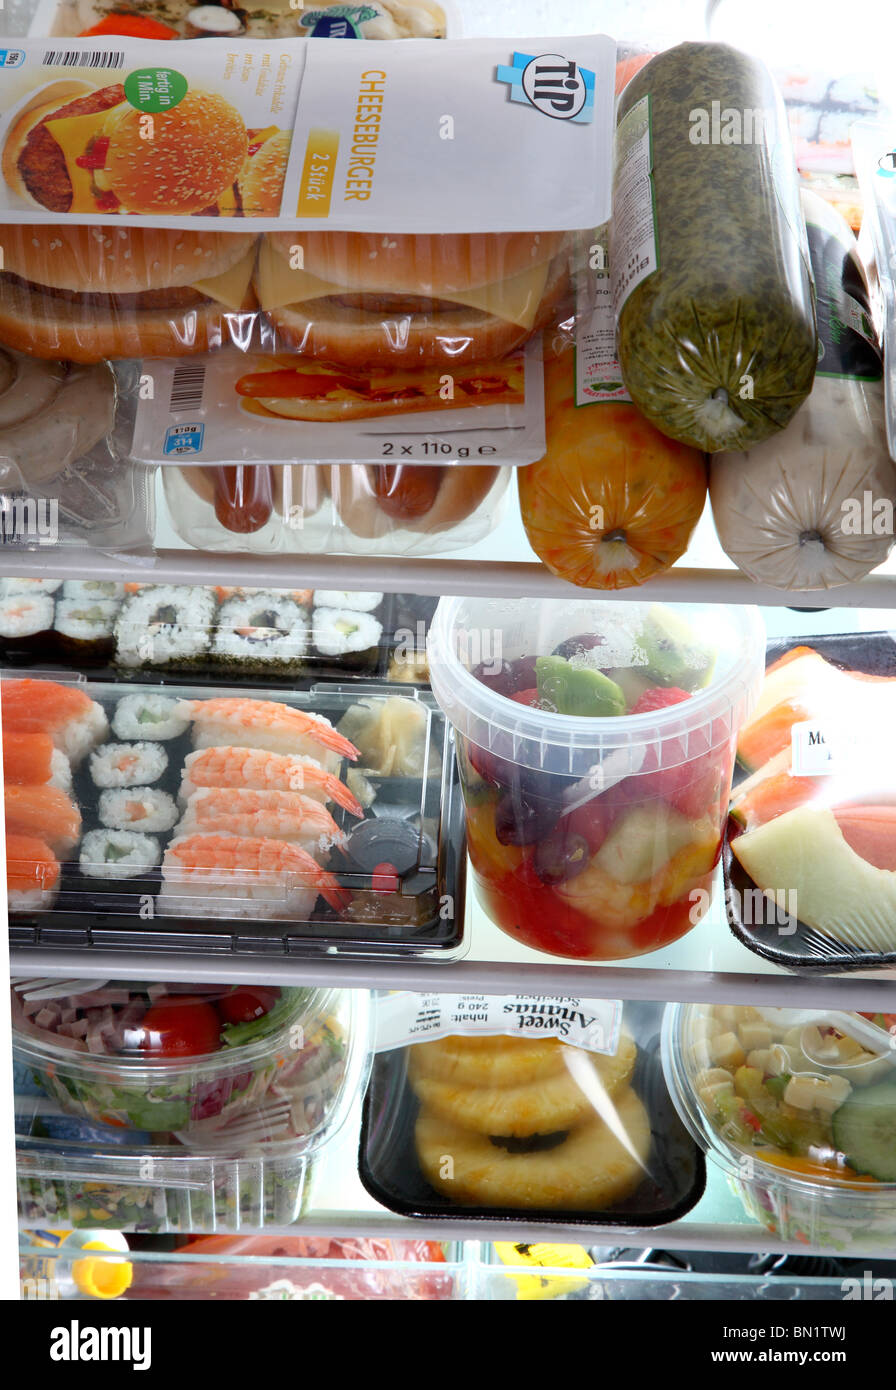 Kühlschrank gefüllt mit verschiedenen Convenience-Food-Produkten. Alle Ready-to-eat Mahlzeiten. Salat, Fleisch, Speisen, Sushi, Gemüse. Stockfoto